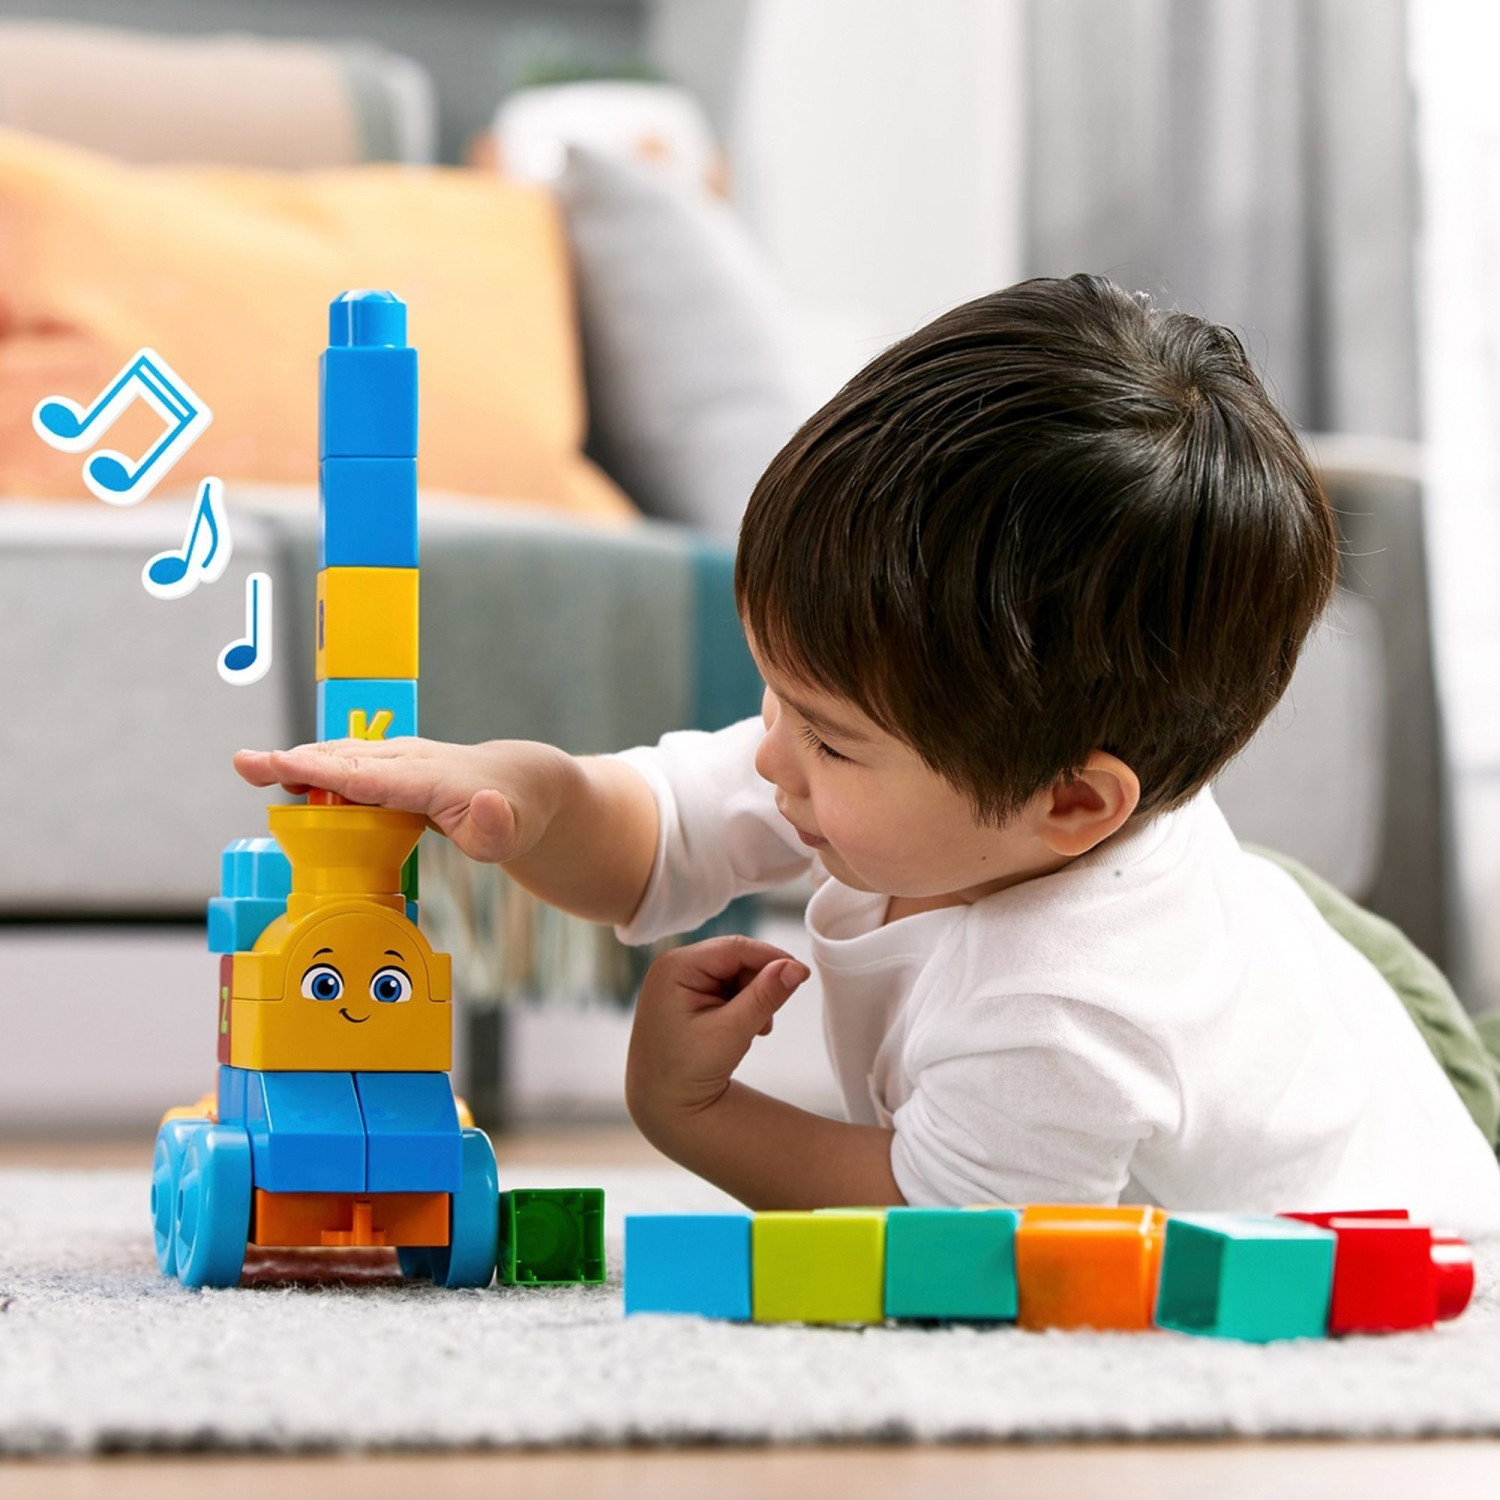 Mega Bloks Tren musical ABC, juguete de construcción para bebé +1 año de  Mattel - JUGUETES PANRE